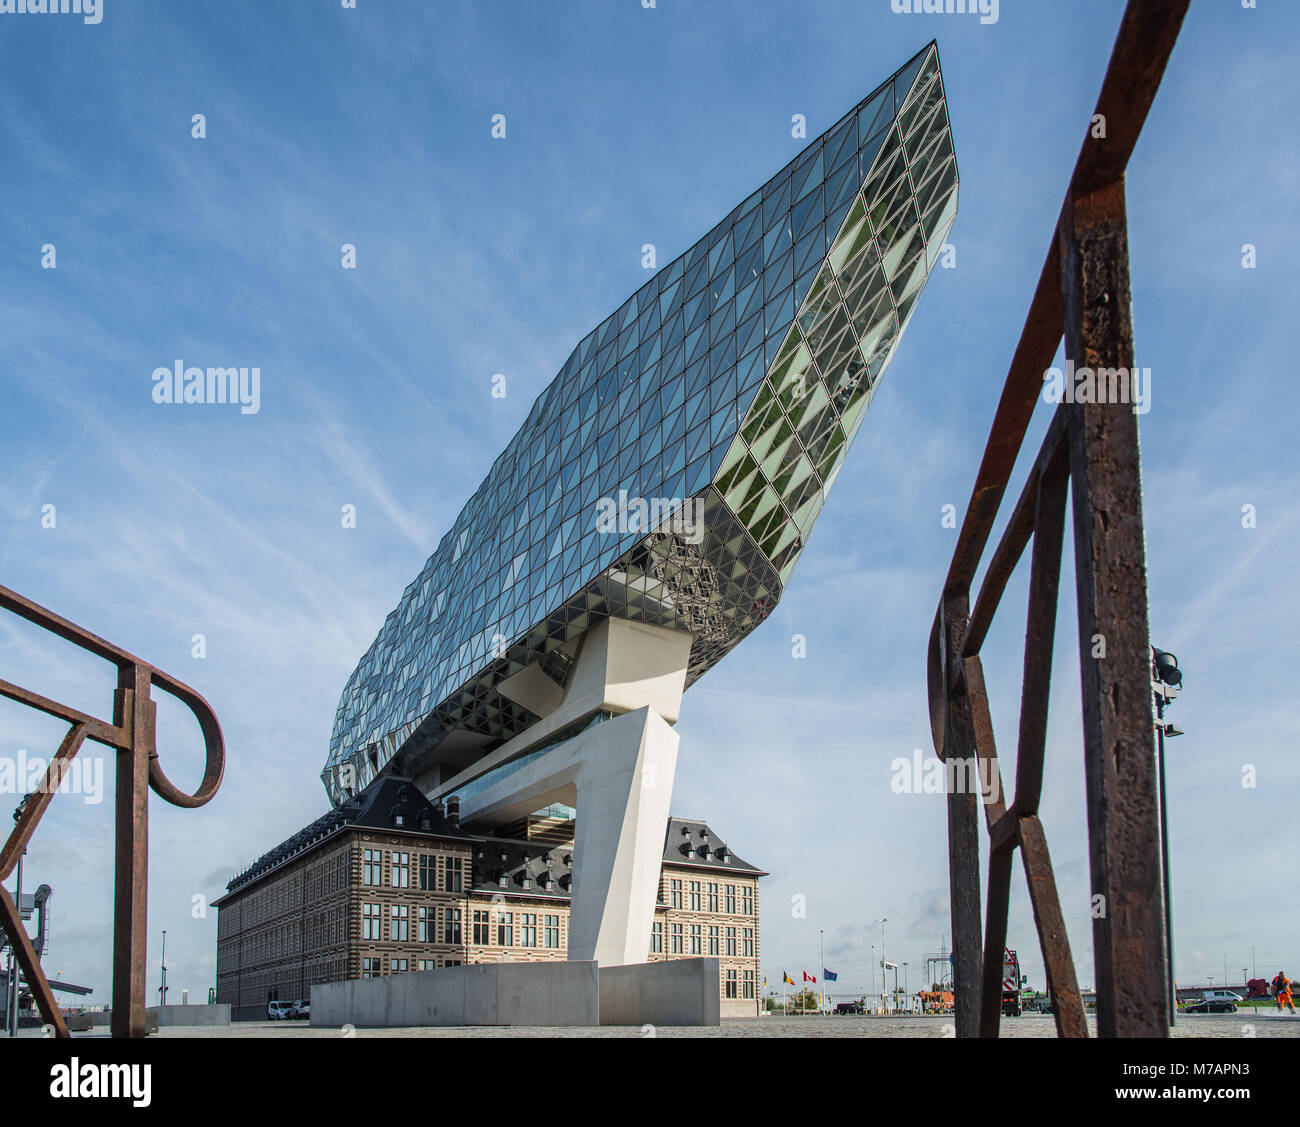 Nieuw Havenhuis (New Harbour House), einem der letzten Projekte von Architektin Zaha Hadid, Antwerpen (Antwerpen), Flandern, Belgien, Europa Stockfoto